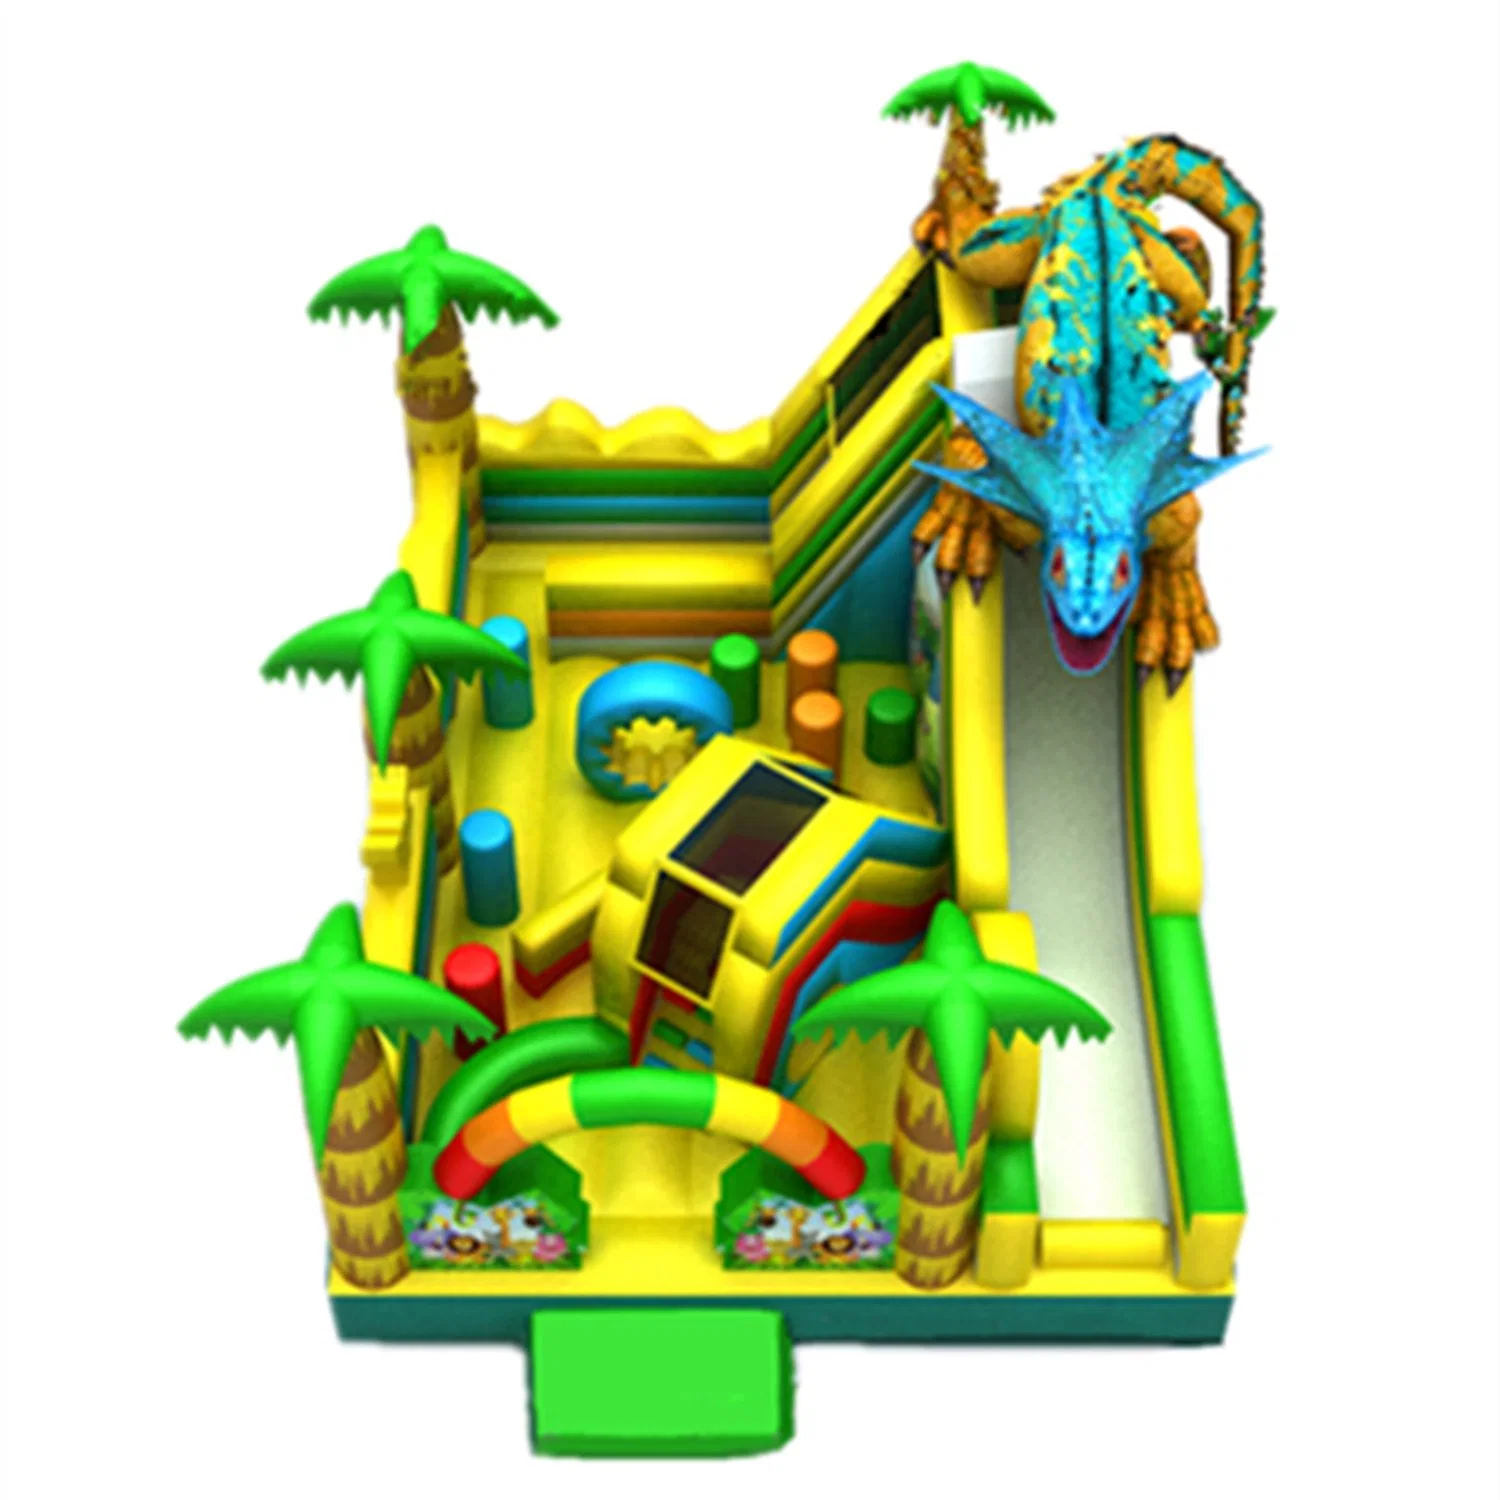 Equipamento de parque de diversões do Castelo Pneumático para crianças ao ar livre Slide Toy 51CB